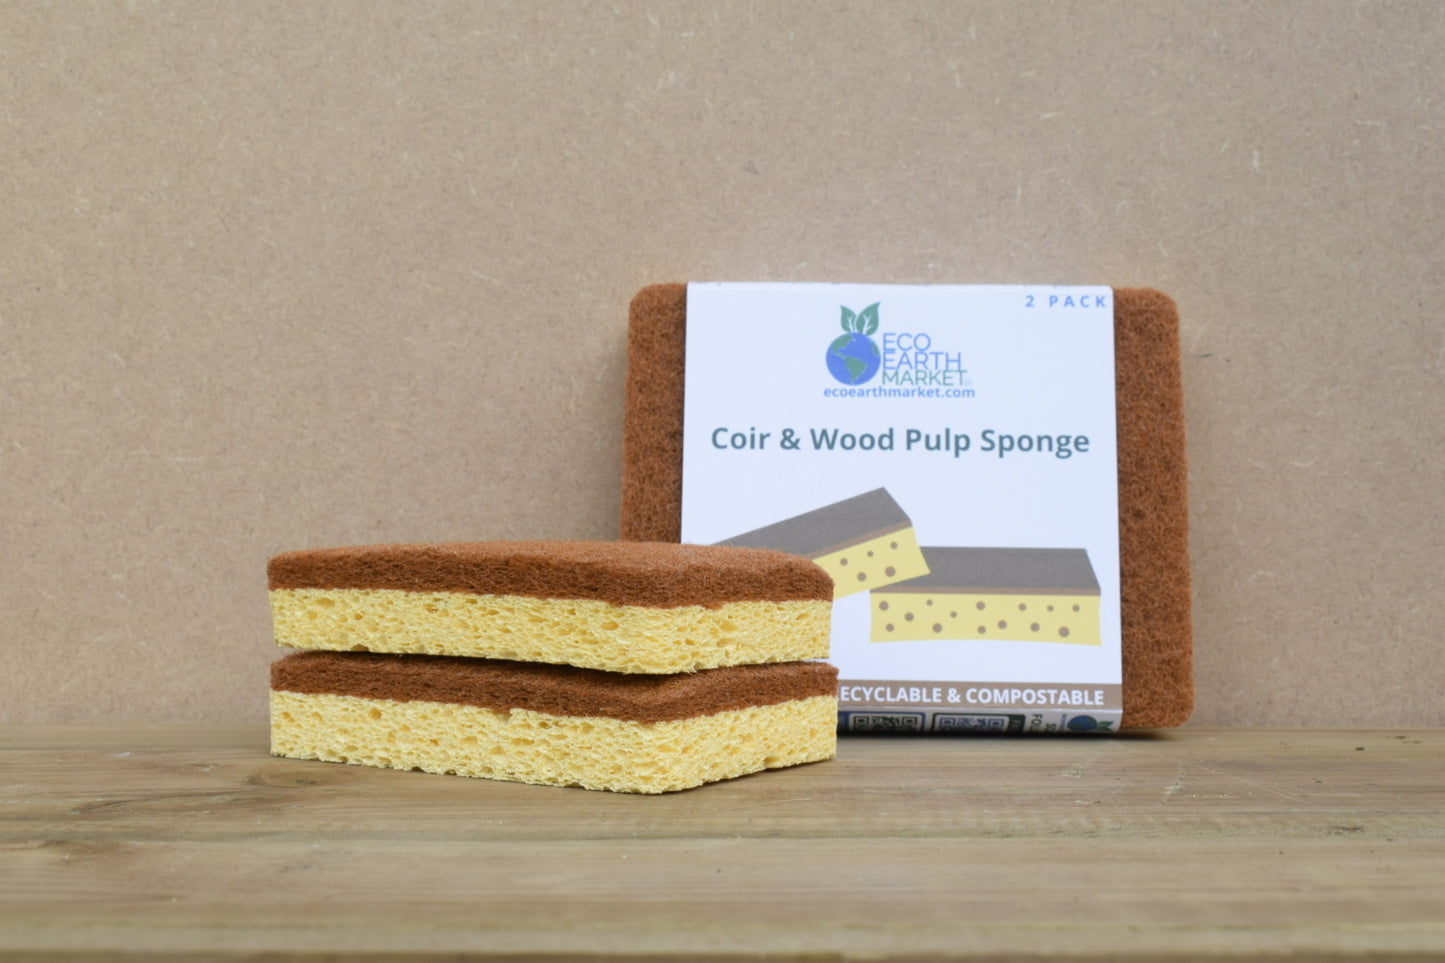 Coir & Wood Pulp Sponge (2 Pack)